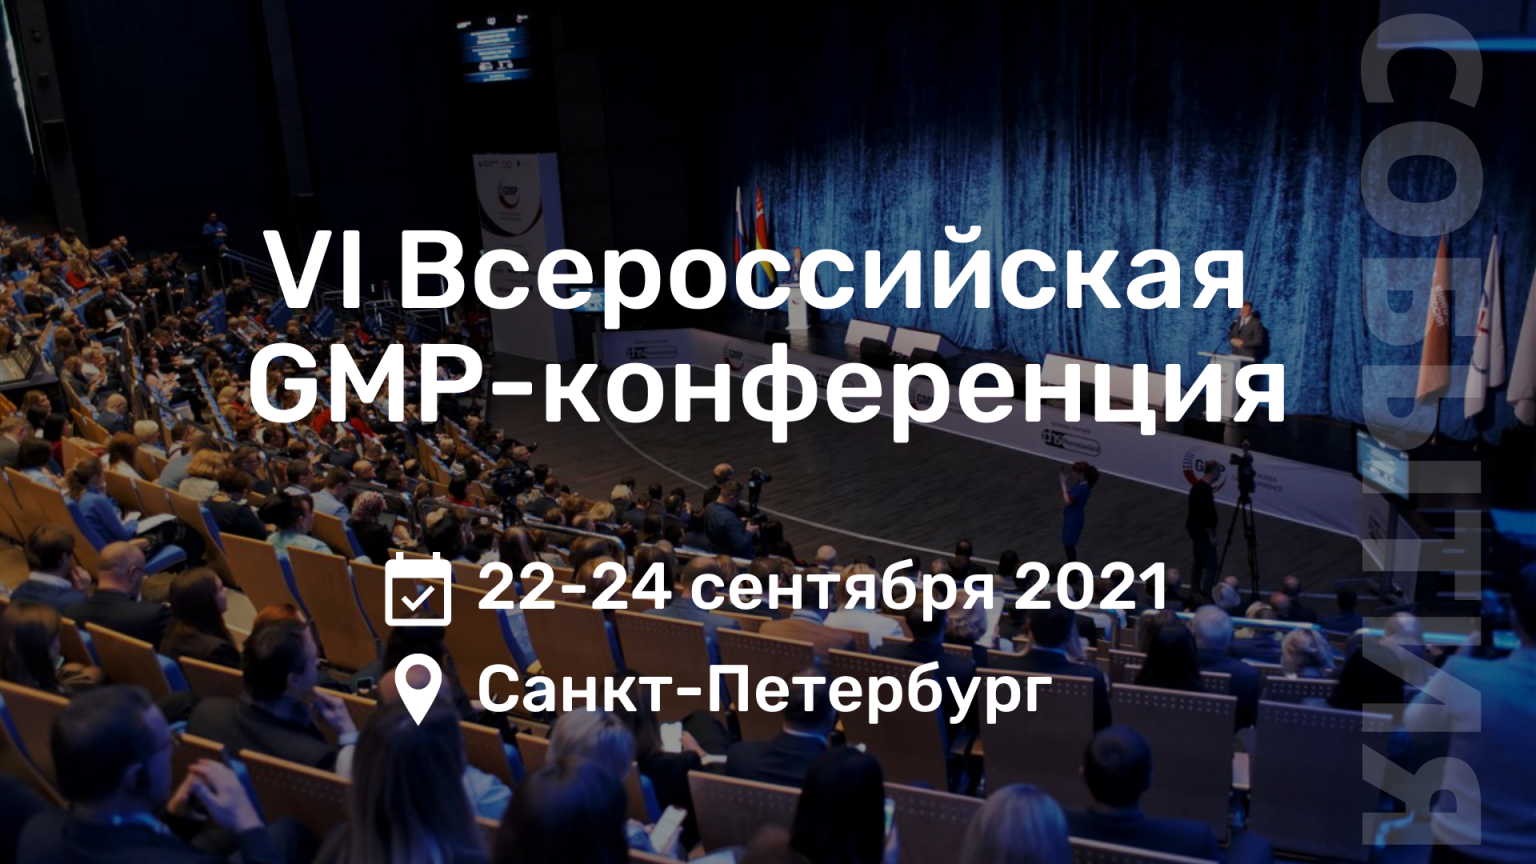 Vi всероссийская практическая конференция. GMP конференция. 8 Всероссийская GMP конференция. Конференция 2021 в les Resort. Конференция ждёт меня.